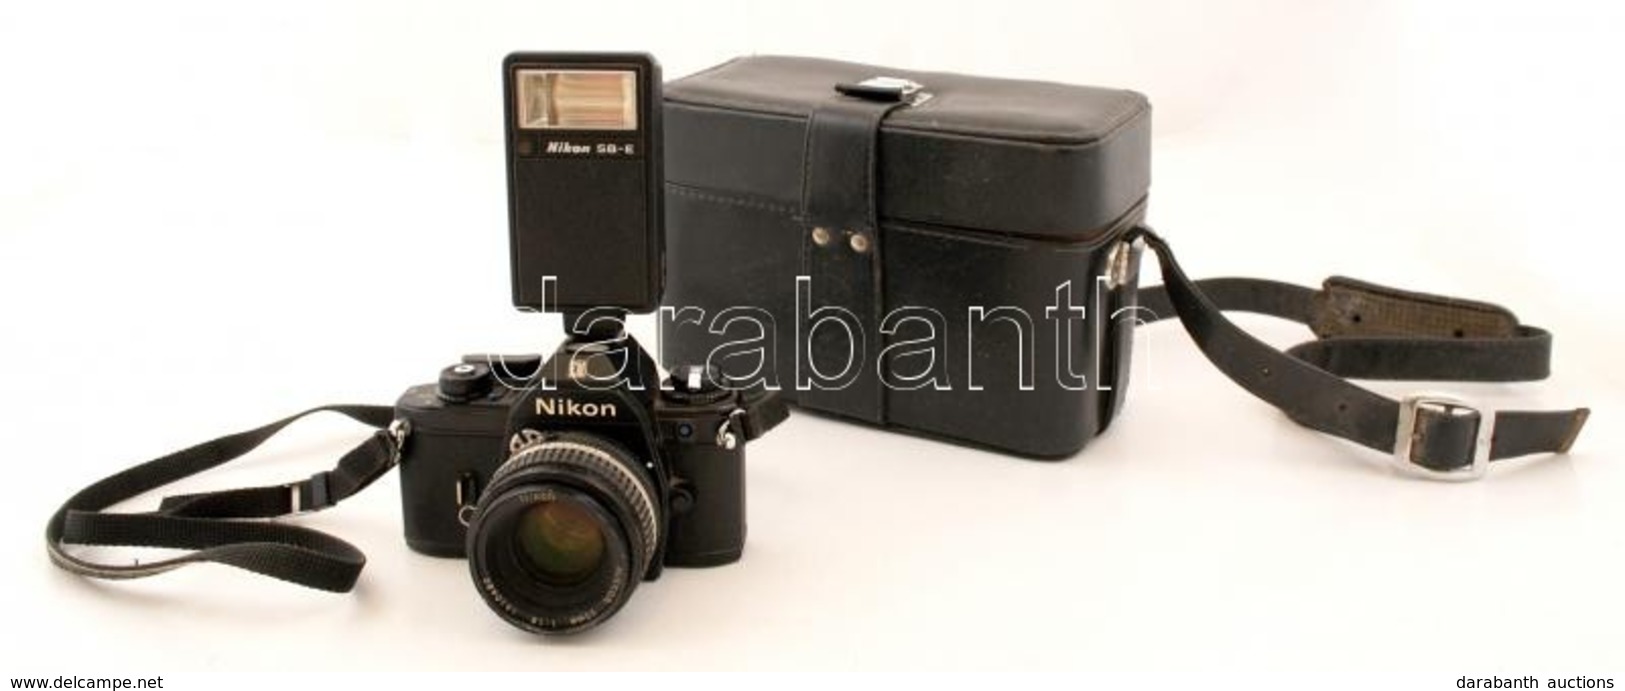 Nikon EM Fényképezőgép Nikkor 50 Mm 1:1,8-as Objektívvel, Nikon SB-E Vakuval, Műbőr Táskában, - Fototoestellen